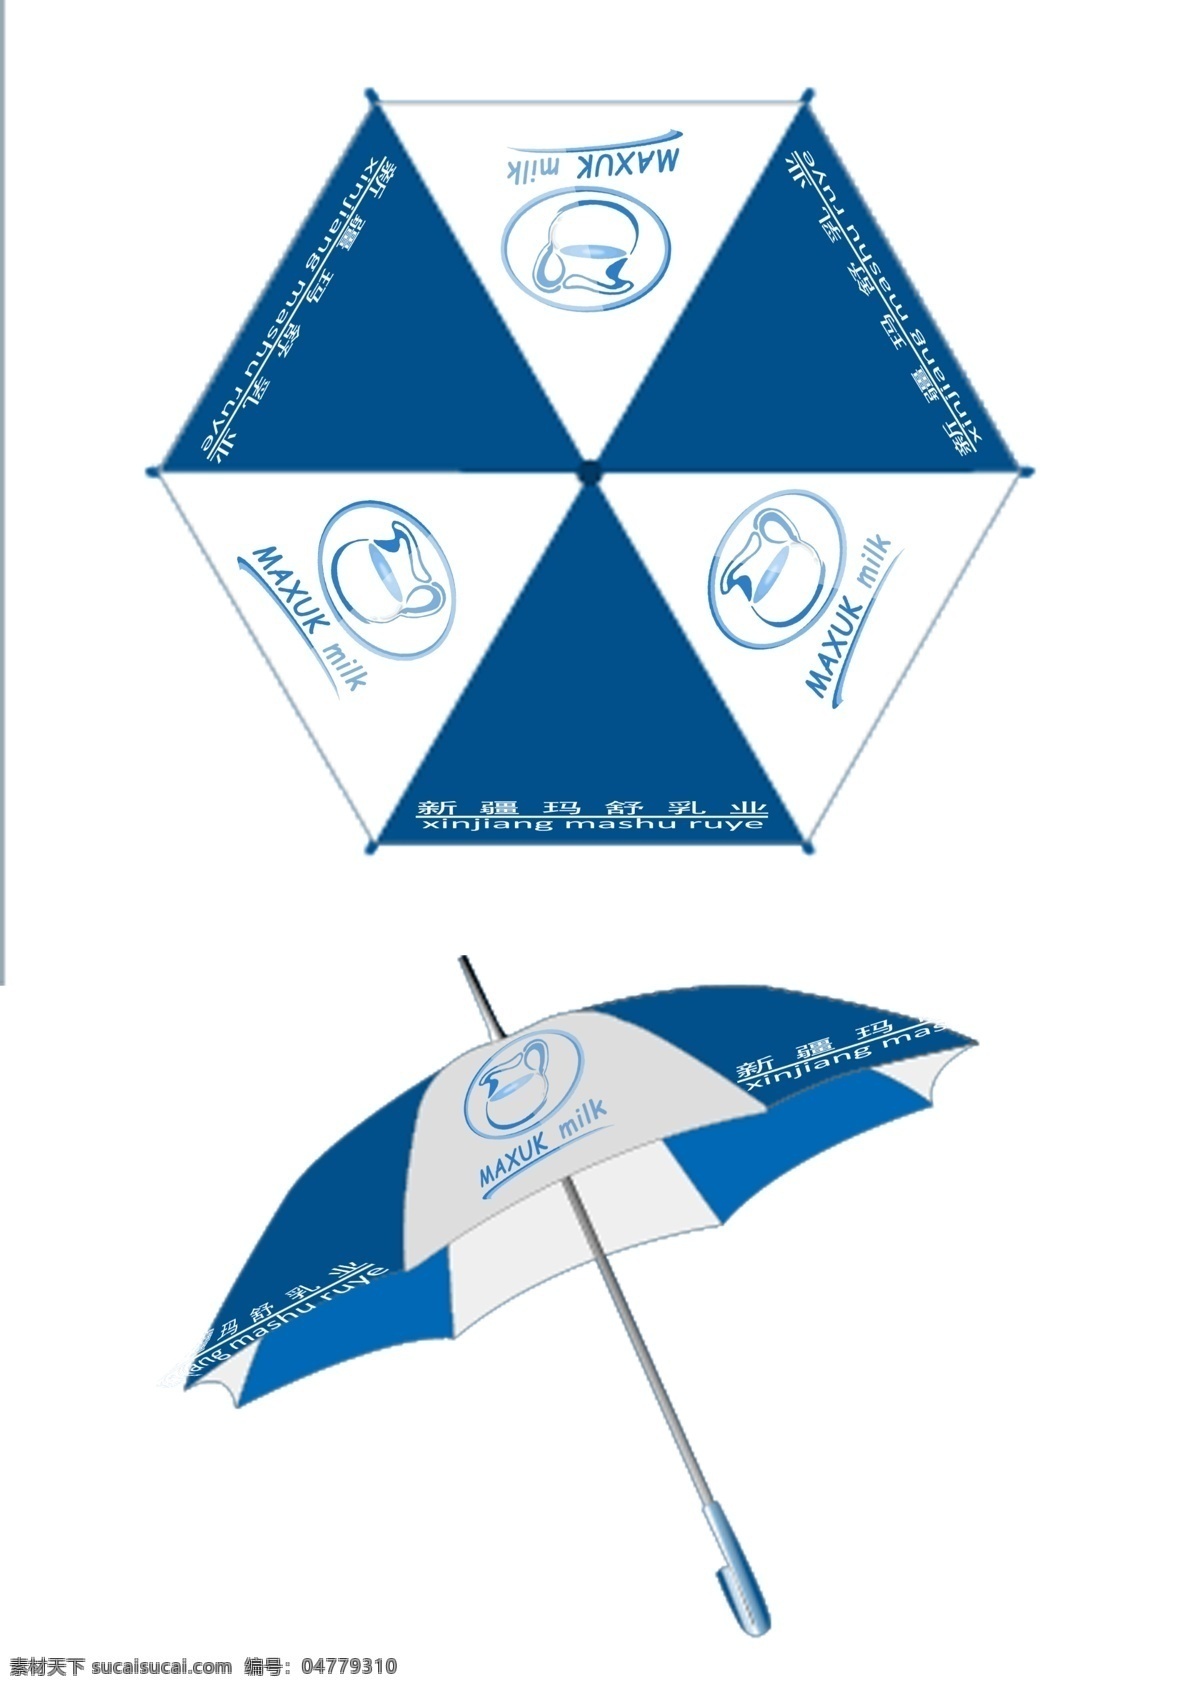 牛奶雨伞 vi 牛奶 logo 全套vi ci 白色